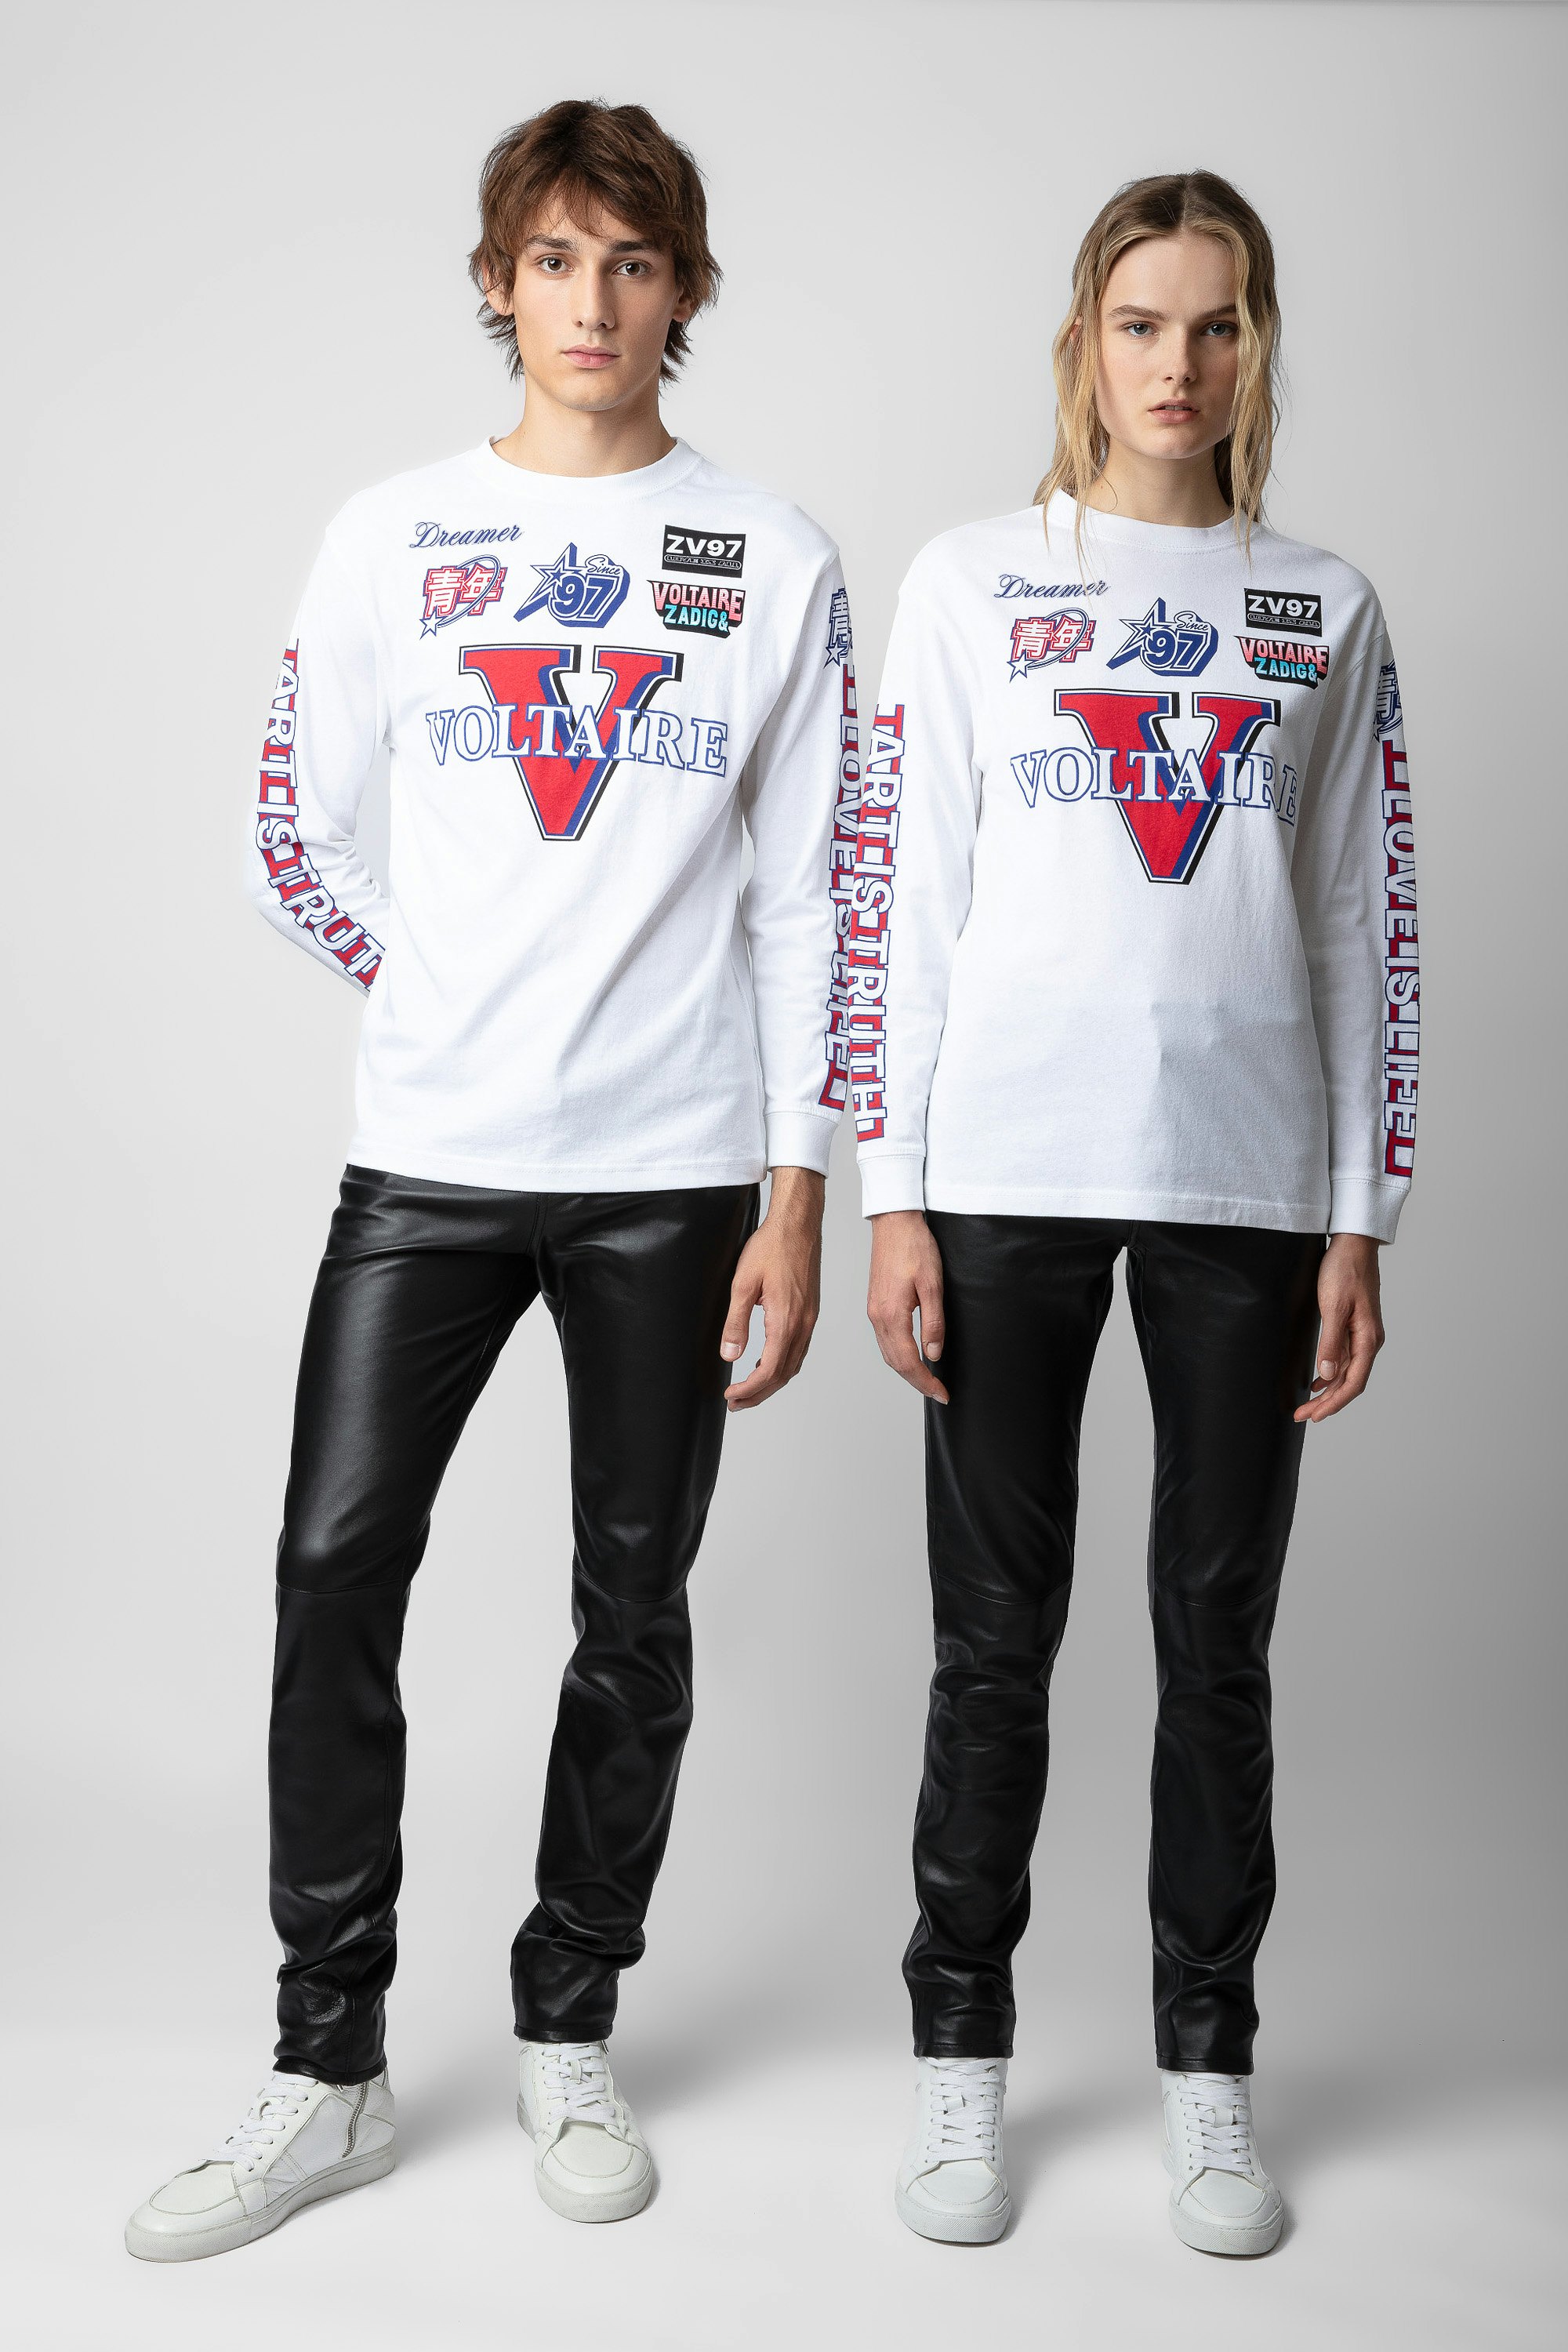 T-shirt Noane Voltaire - T-shirt unisex a maniche lunghe in cotone bianco con motivi badge Voltaire e imbottita sui gomiti in stile biker.